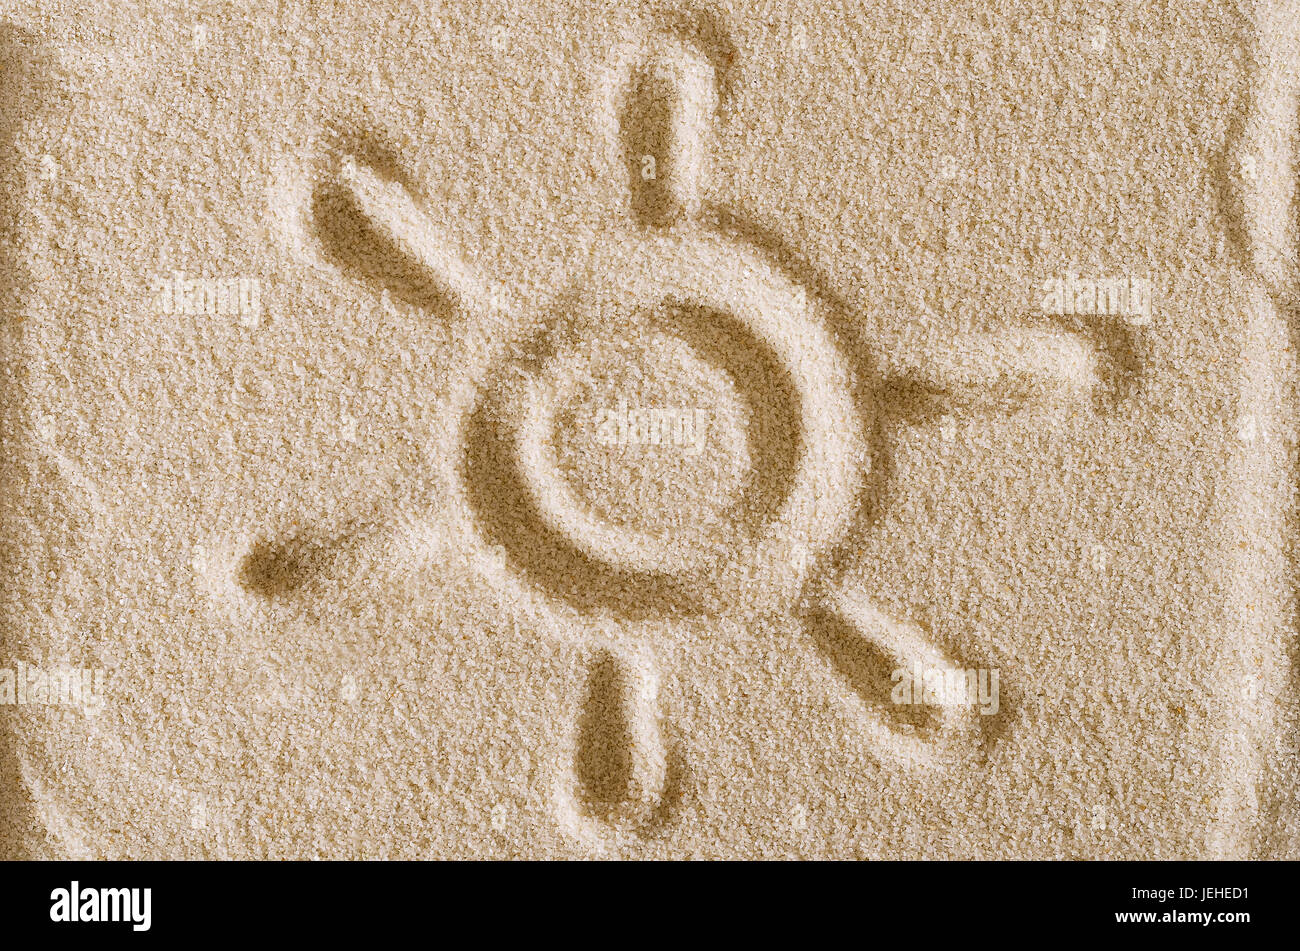 Sonnensymbol Sandoberfläche angesaugt. Das solar-Symbol ist ein Kreis mit sechs Strahlen. Piktogramm und Zeichen für hohe Helligkeit. Makrofoto Nahaufnahme von oben. Stockfoto